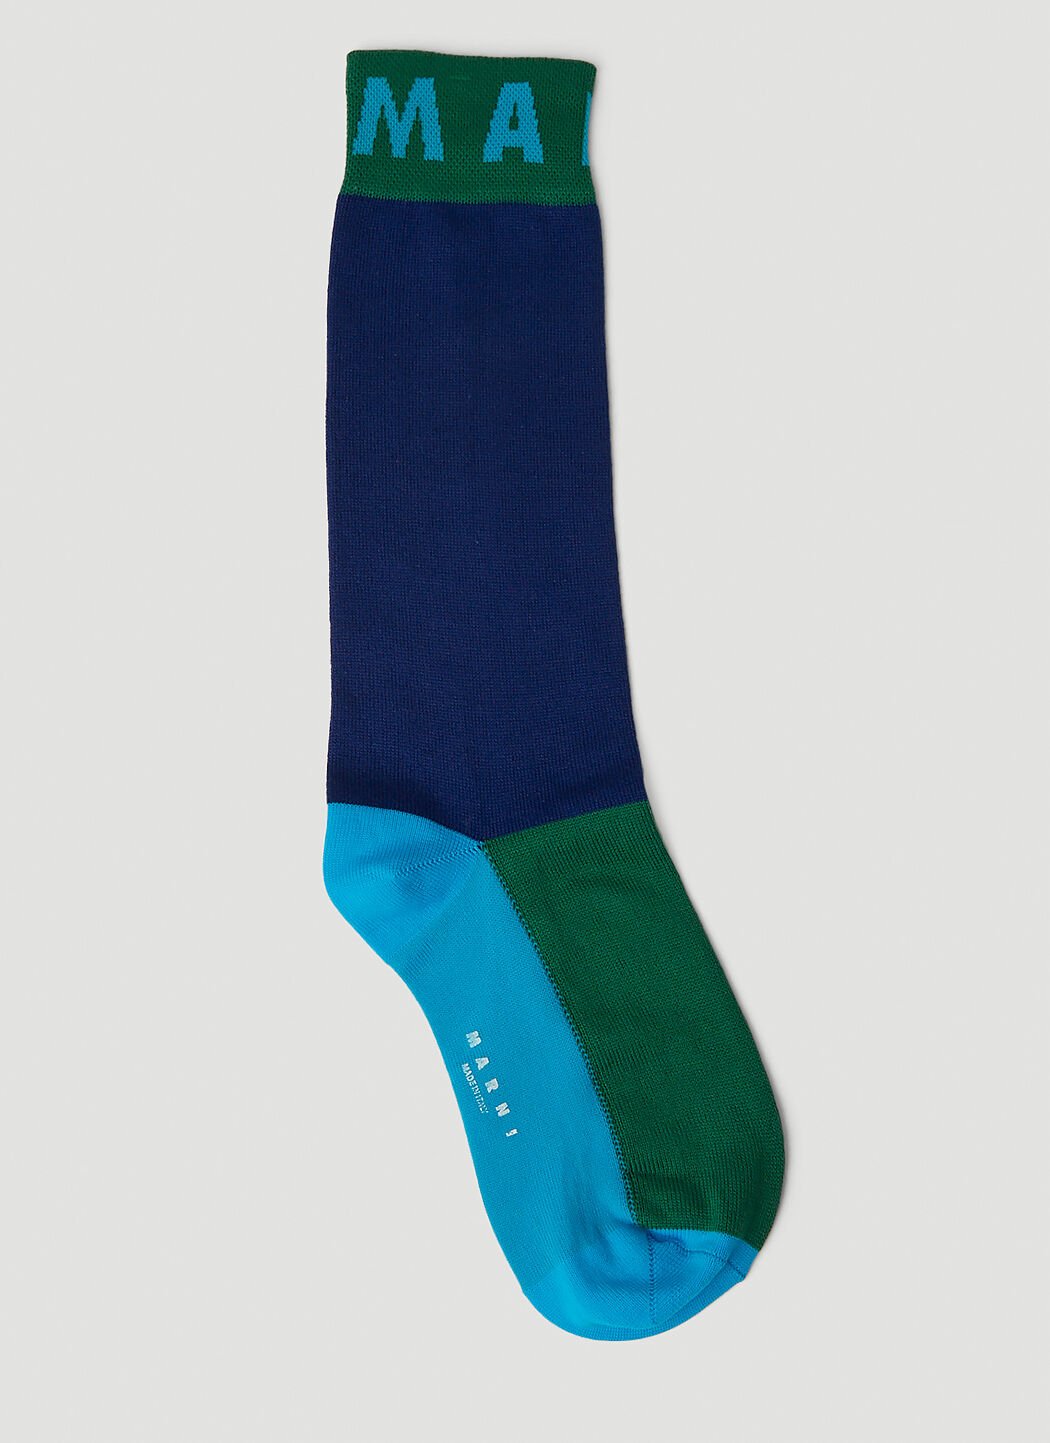 Marni Colour Block Socks Blue mni0251028